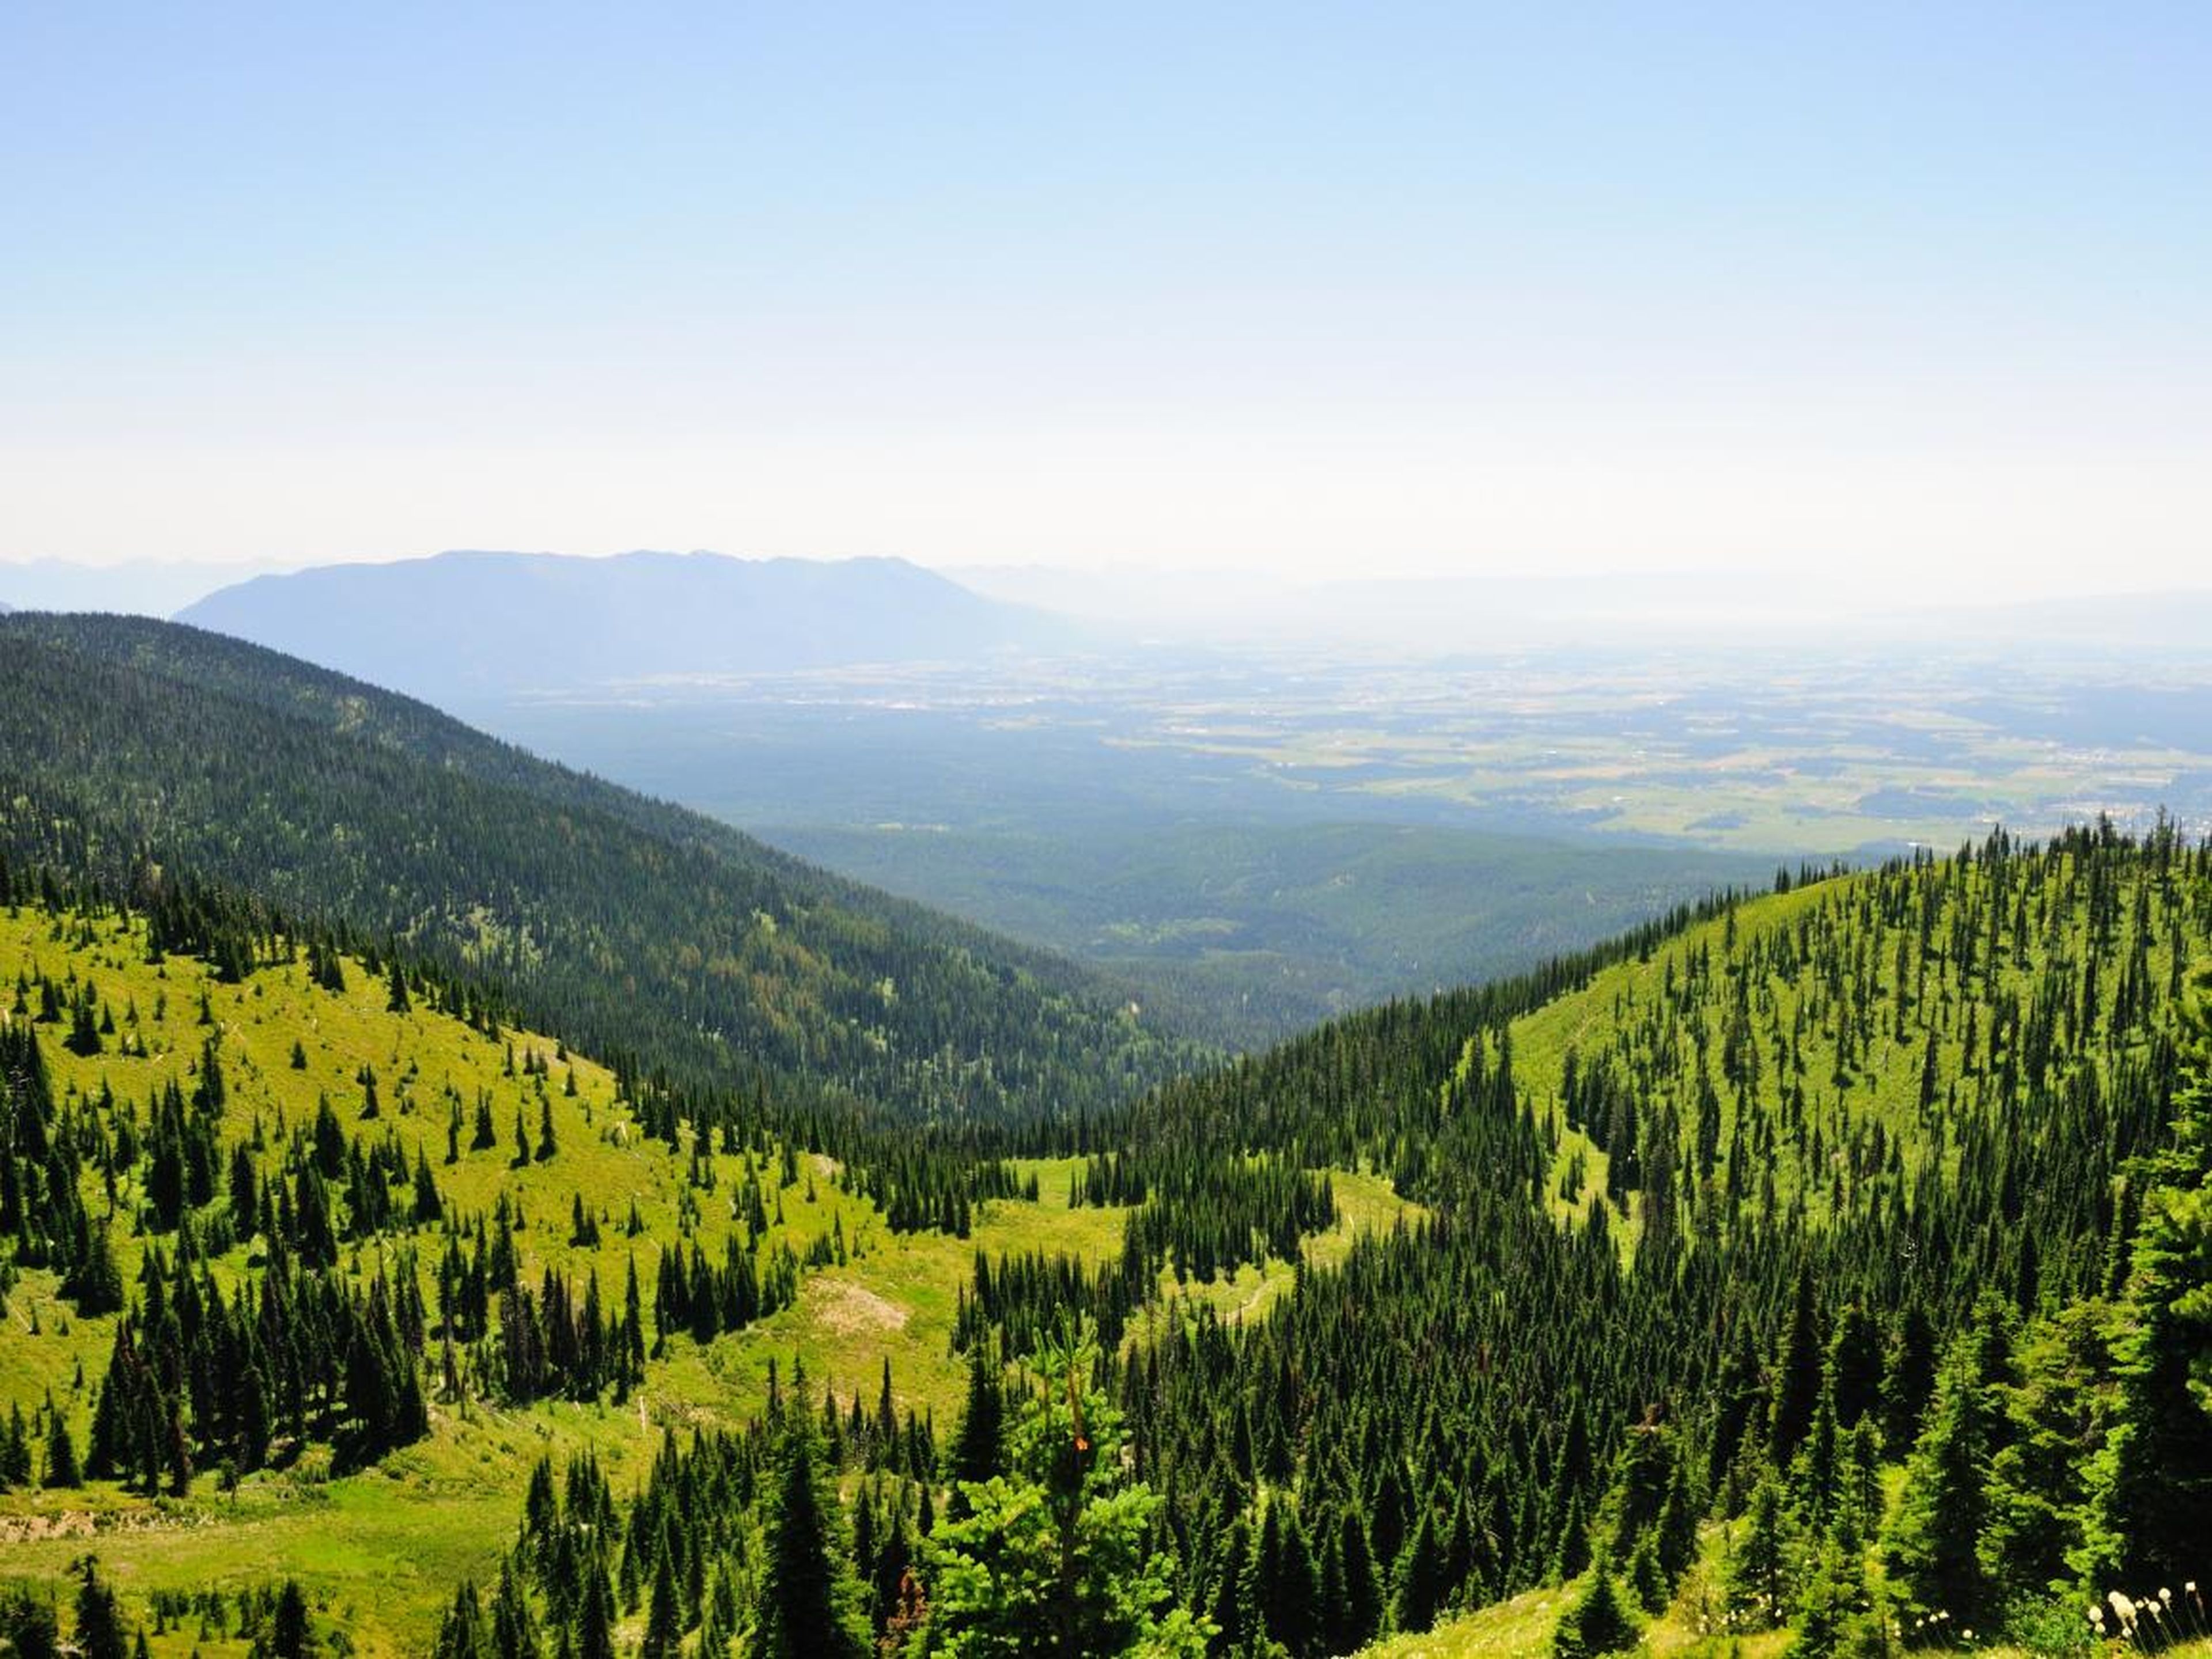 La zona ofrece impresionantes vistas a la montaña.